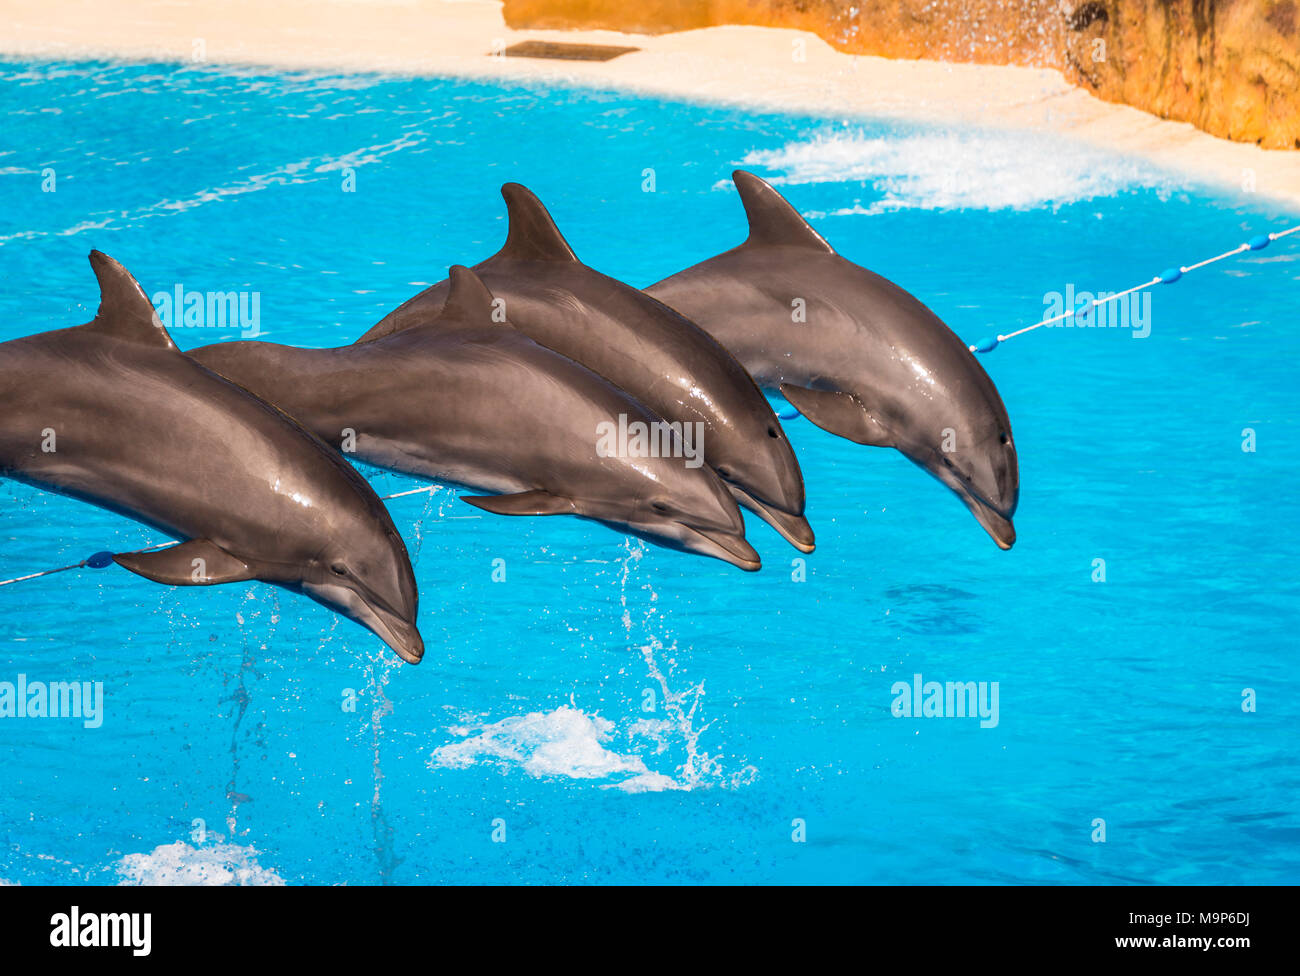 Les grands dauphins (Tursiops truncatus) sauter hors de l'eau, spectacle de dauphins, delphinarium, Loro Parque, Puerto de la Cruz, Tenerife, Îles Canaries Banque D'Images